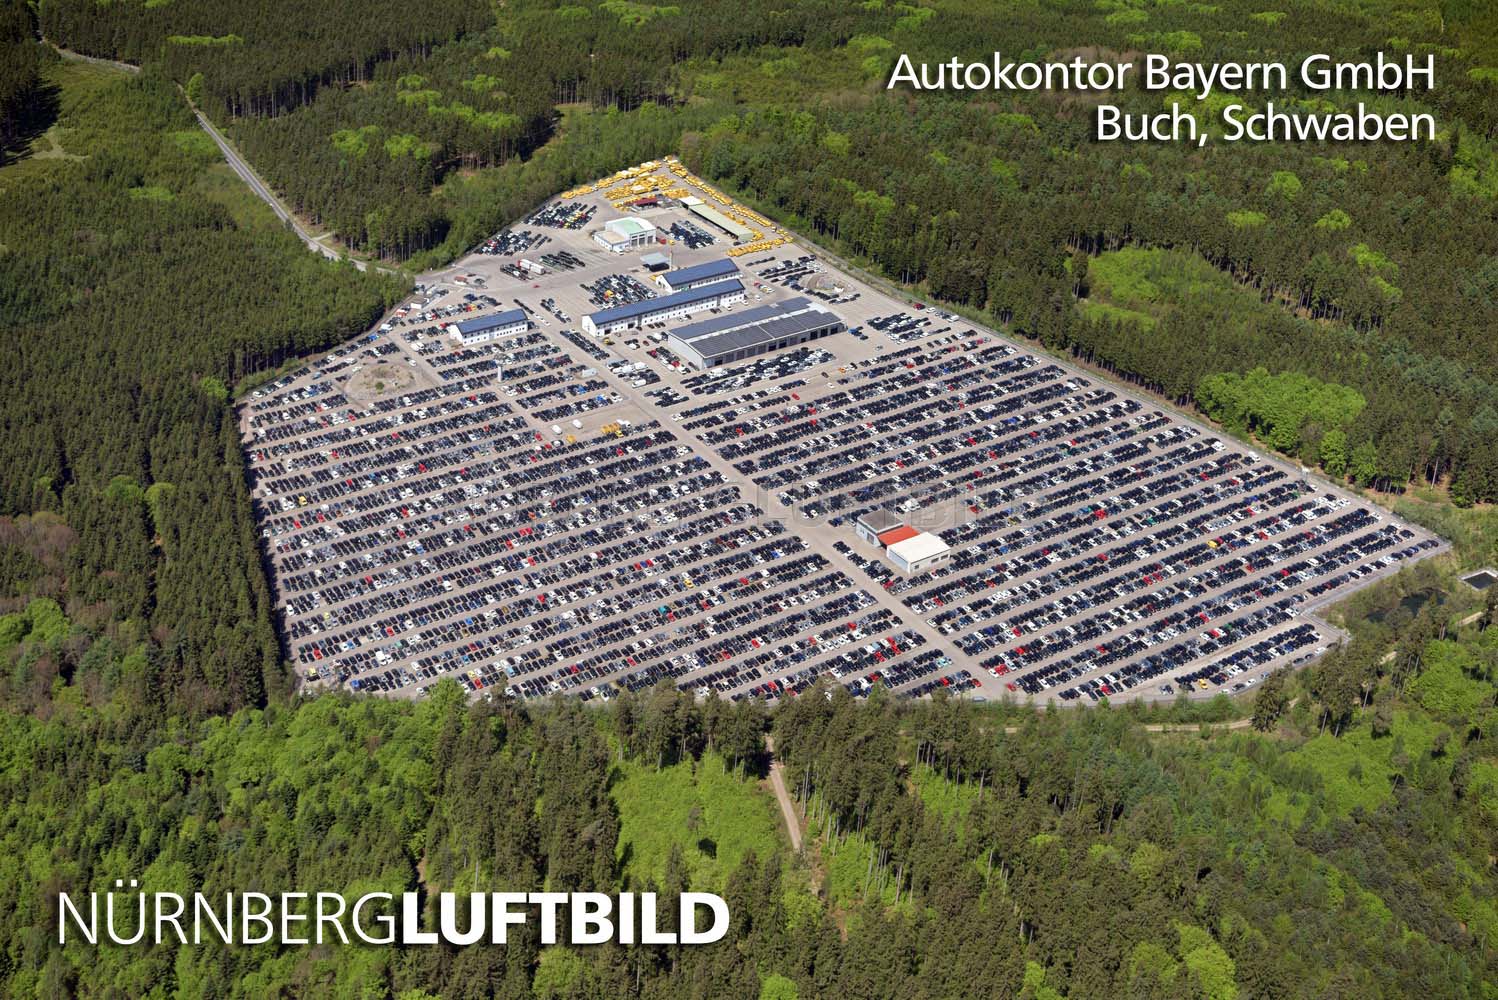 Autokontor Bayern GmbH, Buch, Schwaben, Luftbild